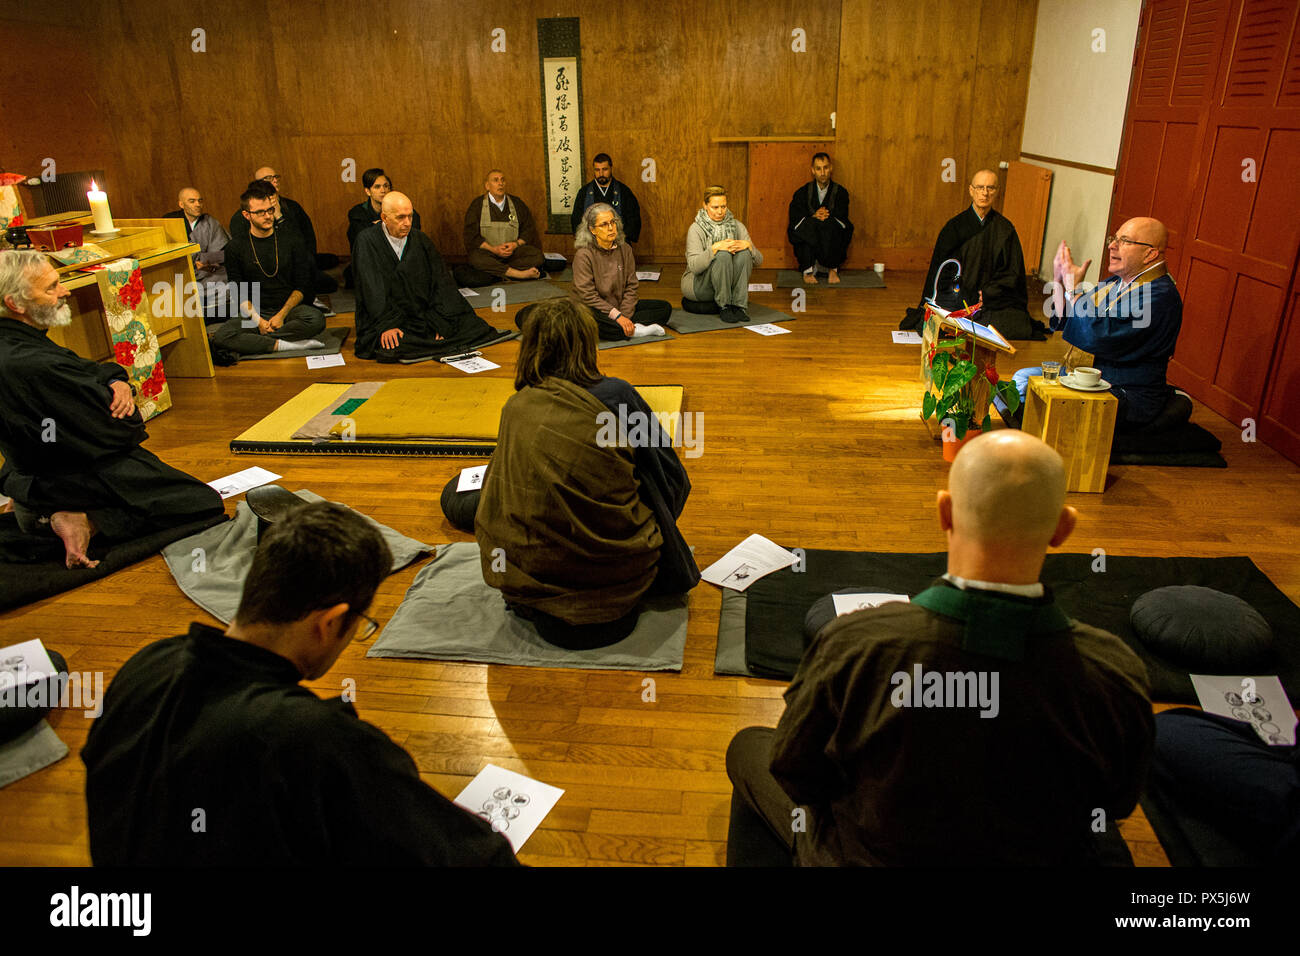 Zen sesshin (ritiro) in Lanau, Cantal, Francia. Master dando un dhamma talk (lezione). Foto Stock